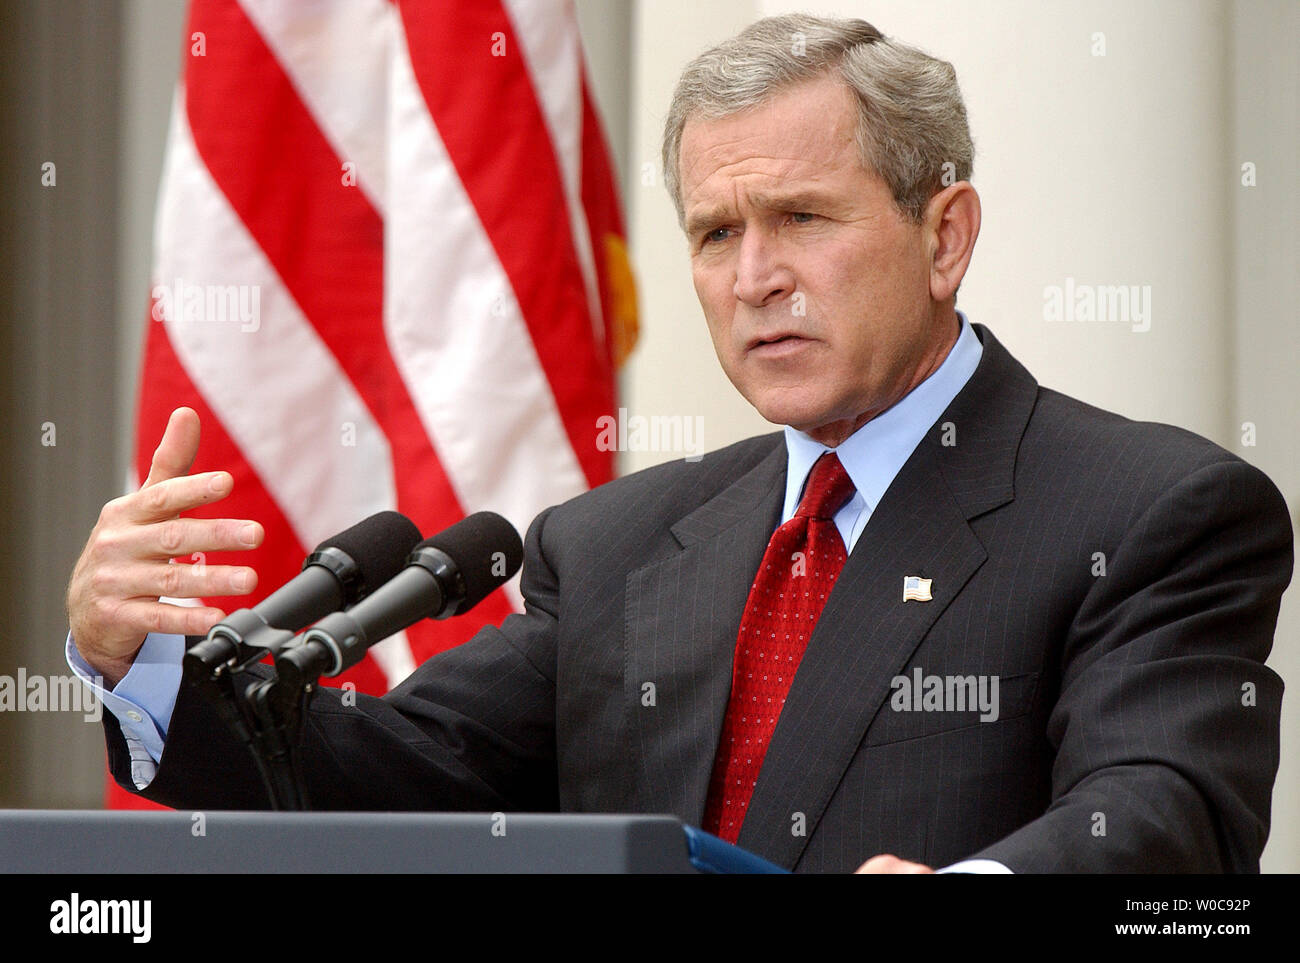 Präsident Bush den Fragen der Medien während einer Pressekonferenz am 28. Oktober 2003, vom Rosengarten des Weißen Hauses. Bush die Schuld an der jüngsten Anschläge in Irak auf Baathistischen und ausländische Terroristen, aber sagte, daß Fortschritte gemacht werden. (UPI/Roger L. Wollenberg) Stockfoto